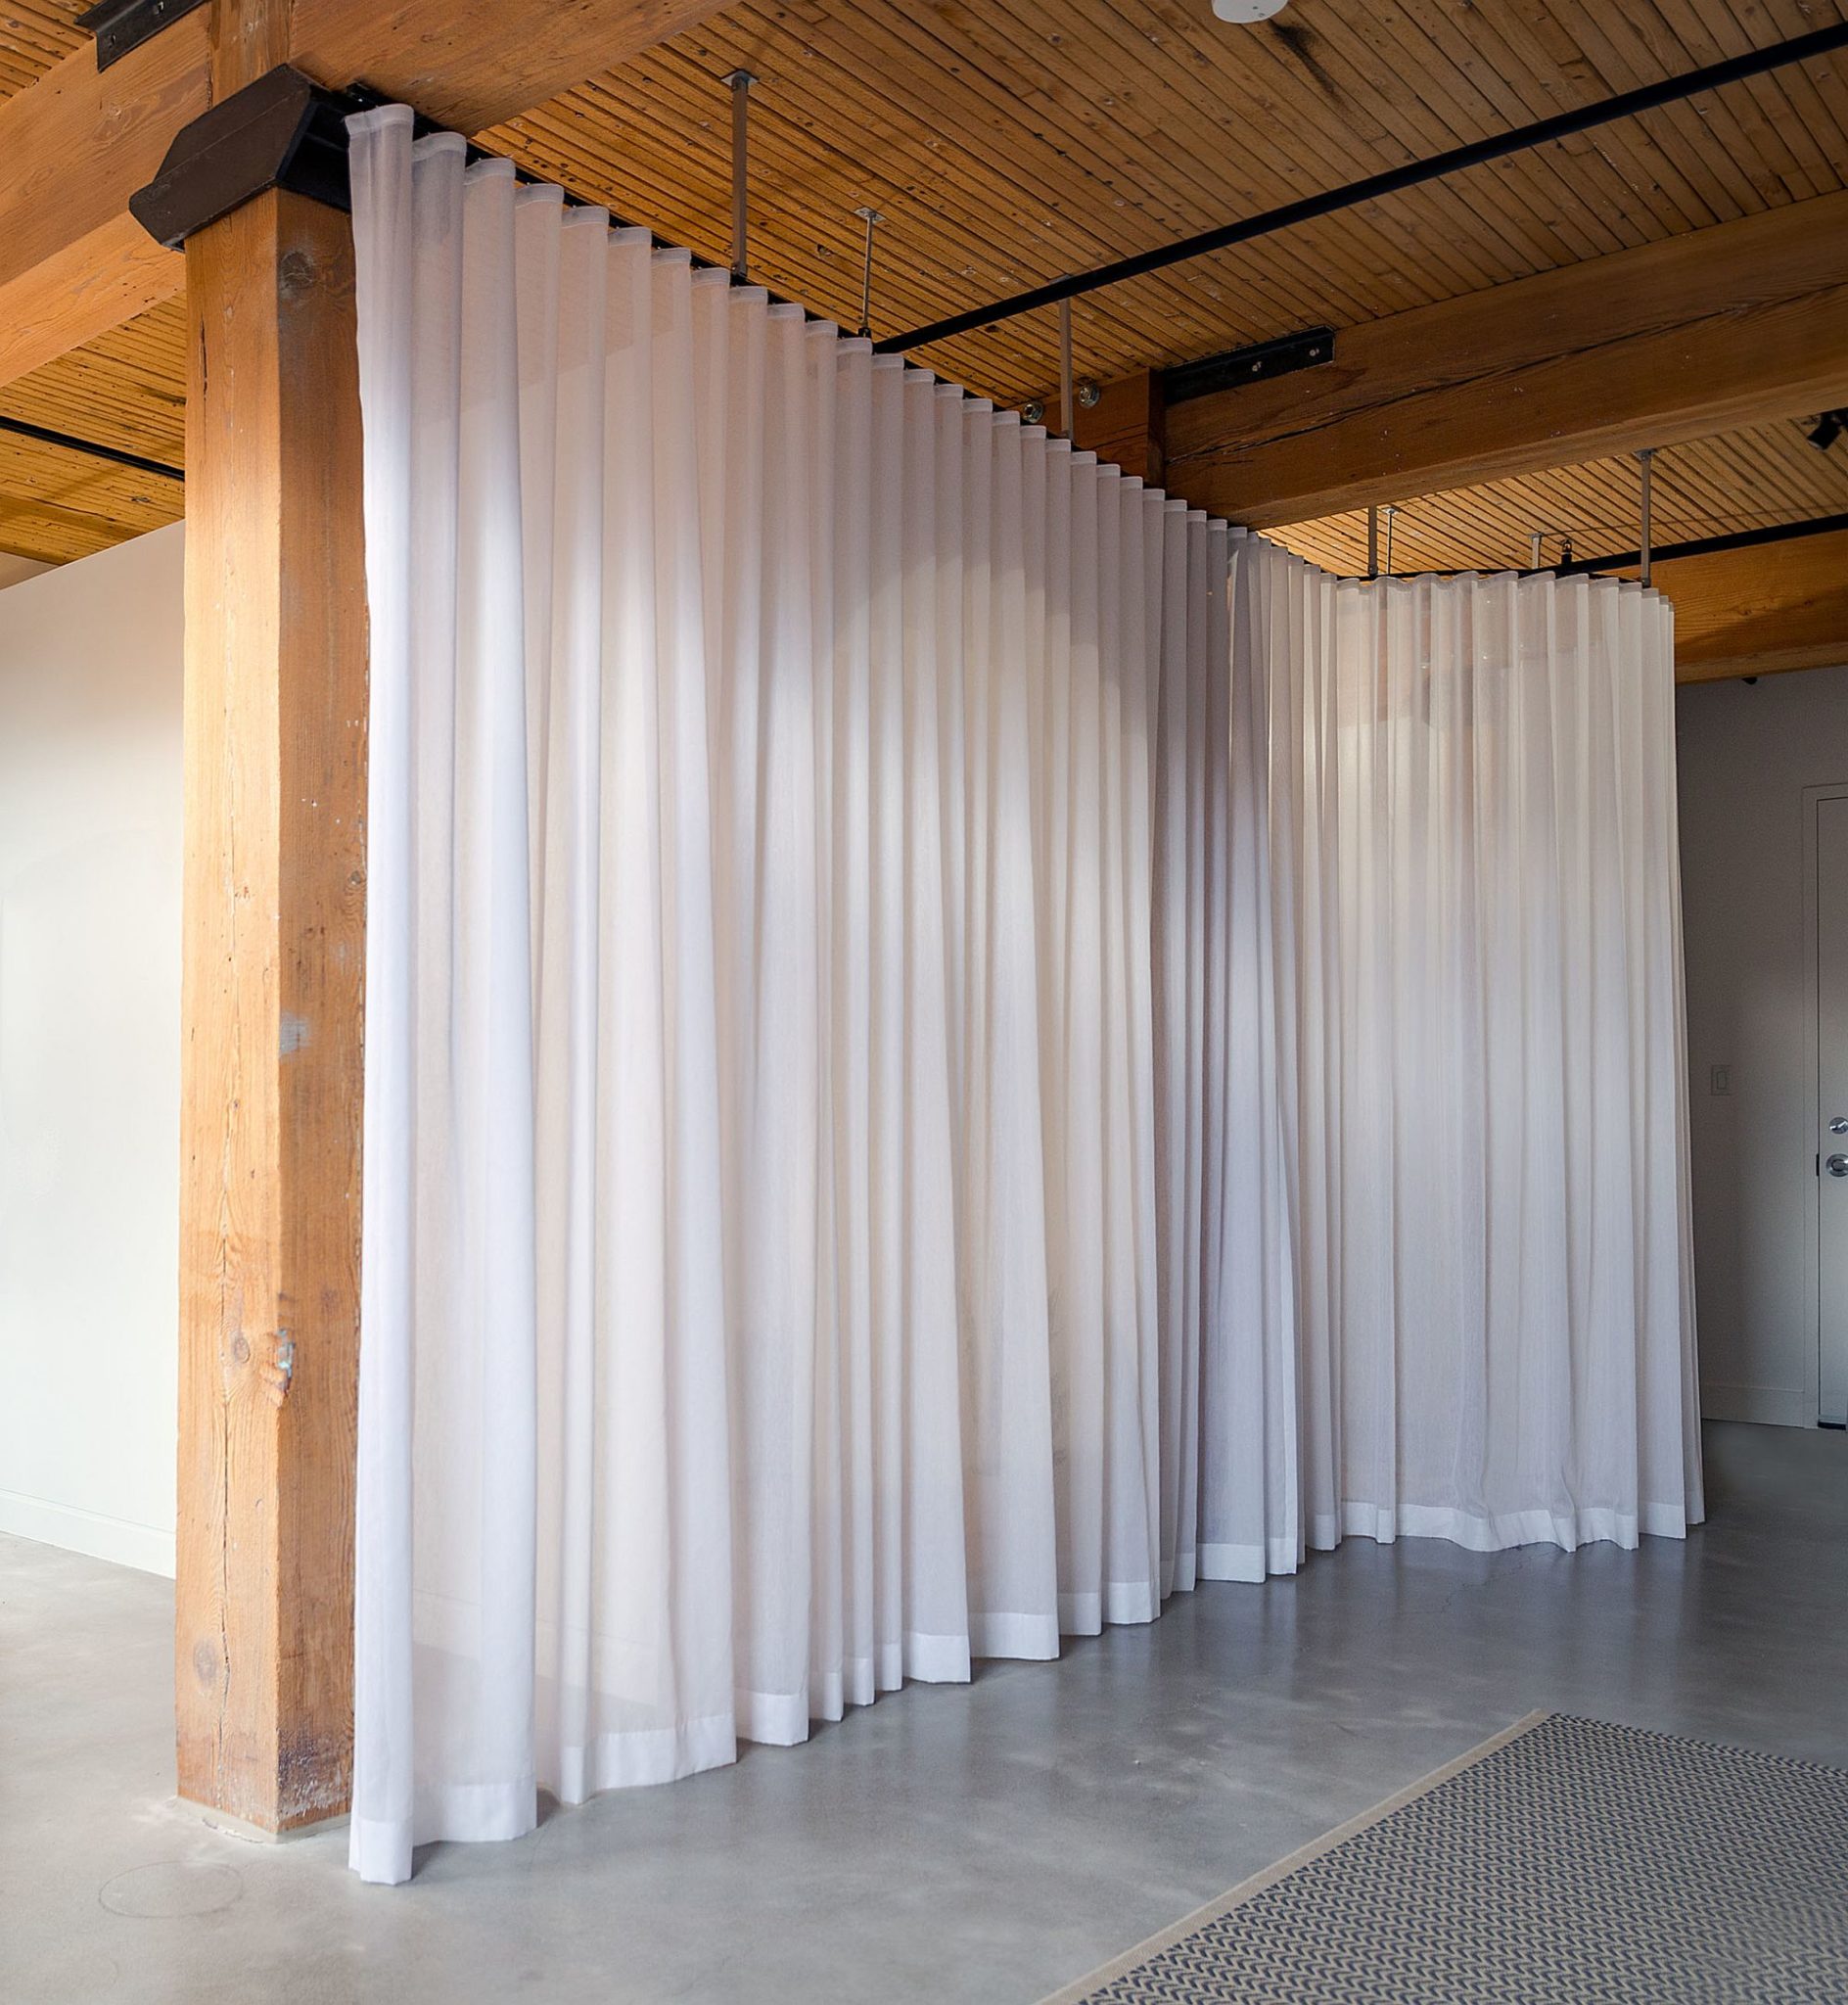 Tấm rèm che màu trắng vừa phân chia không gian rõ ràng vừa tạo độ mềm mại, uyển chuyển, cho căn phòng cảm giác bình dị mà vẫn sang trọng.